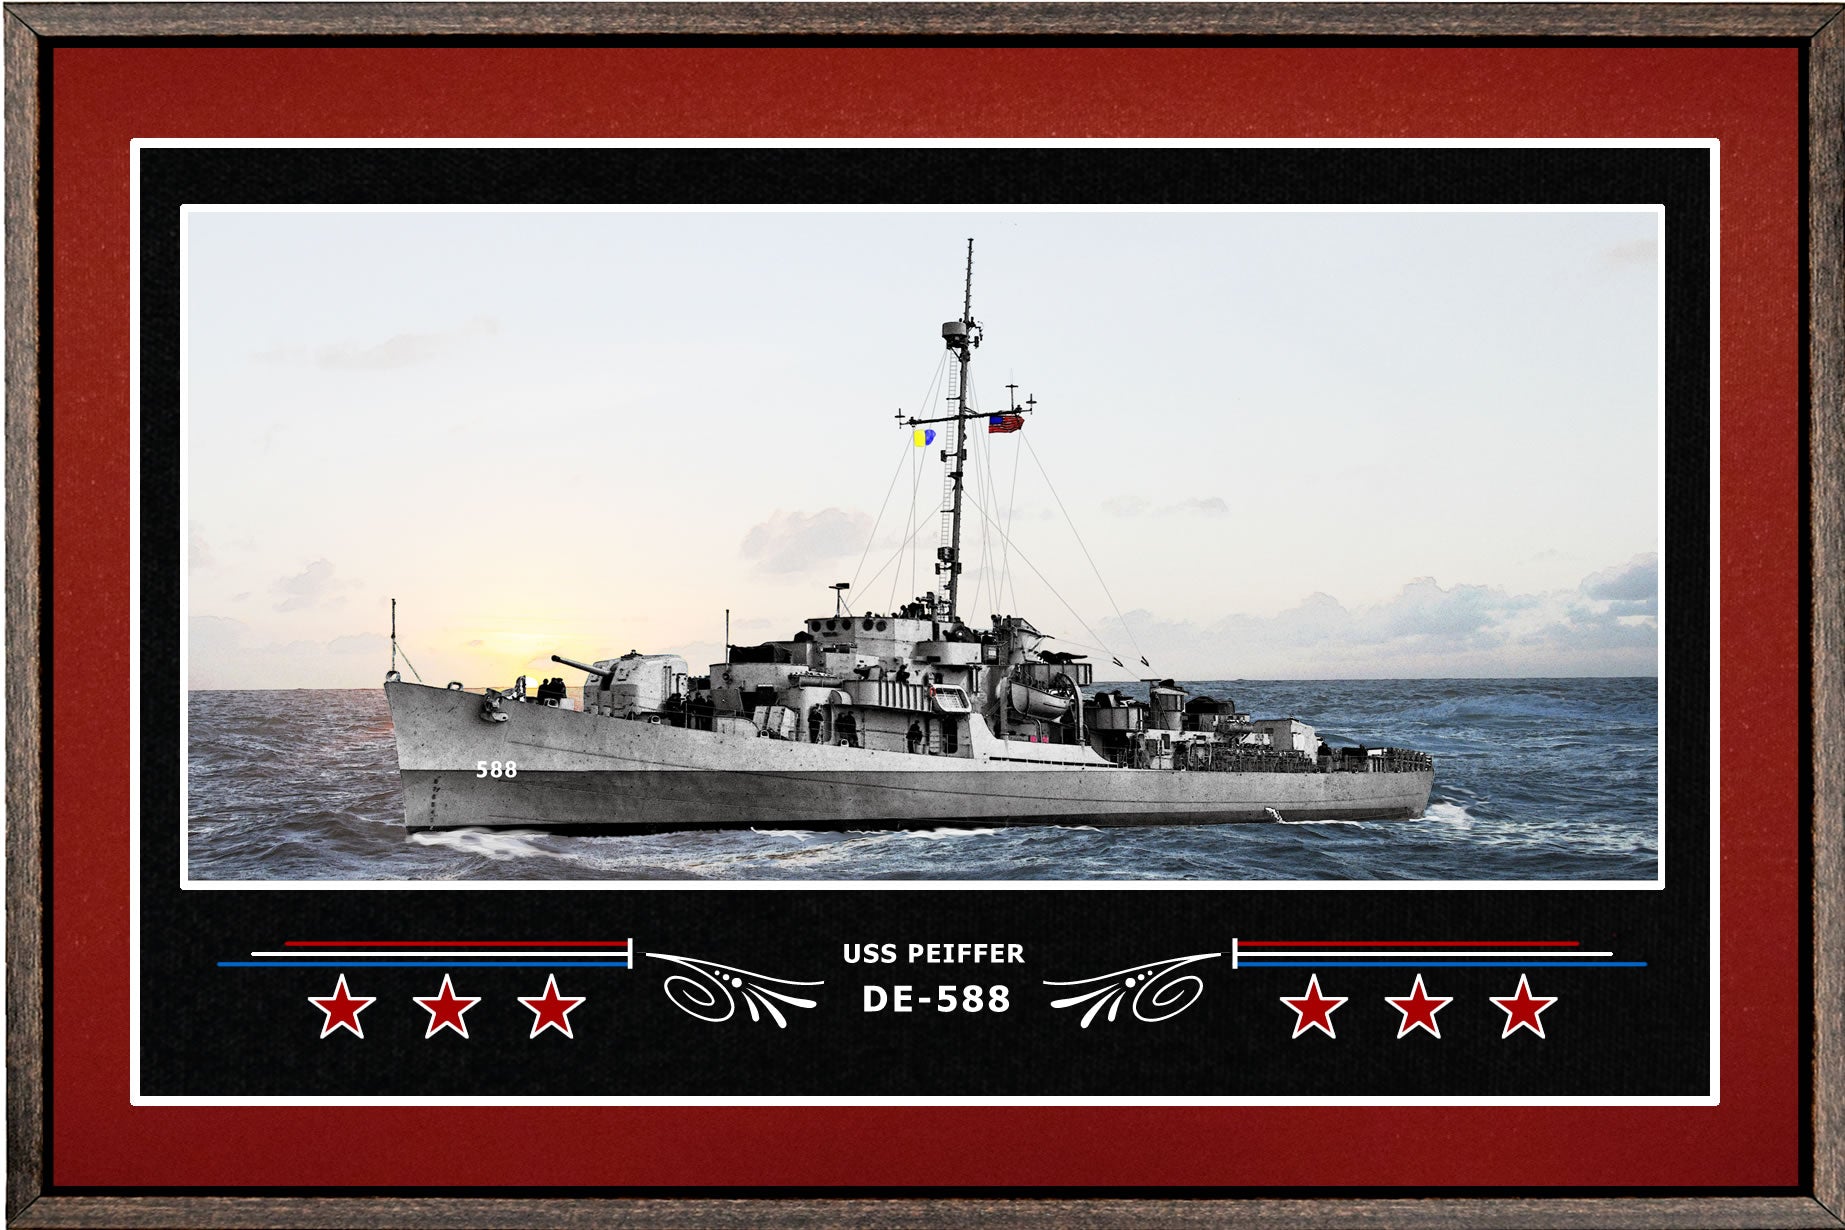 USS PEIFFER DE 588 BOX FRAMED CANVAS ART BURGUNDY